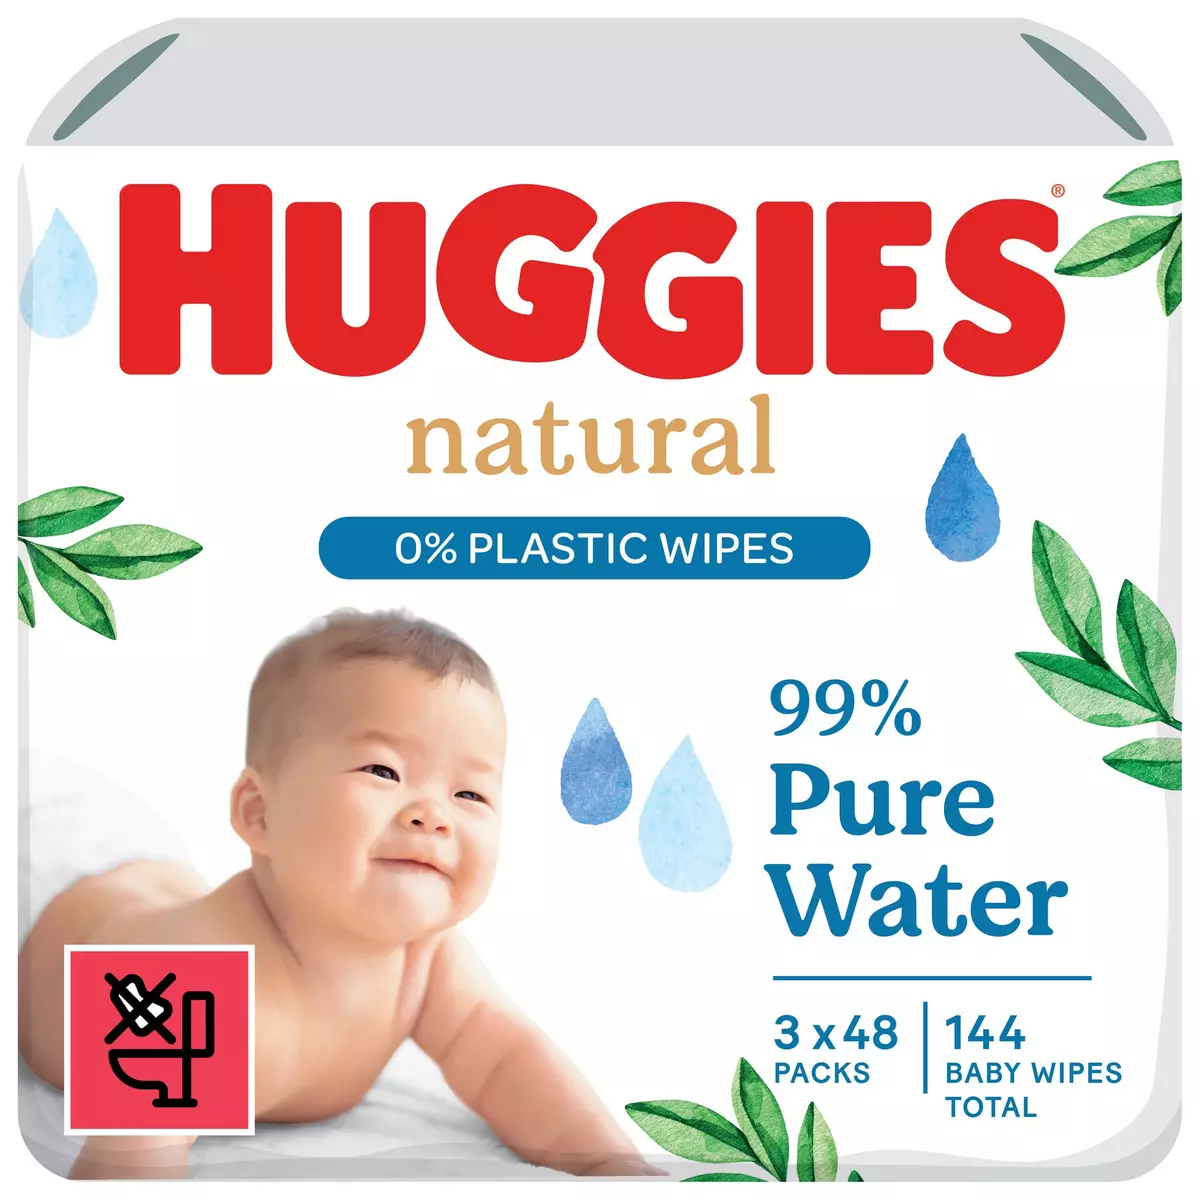 Lingettes humides pour bébé Water Wipes